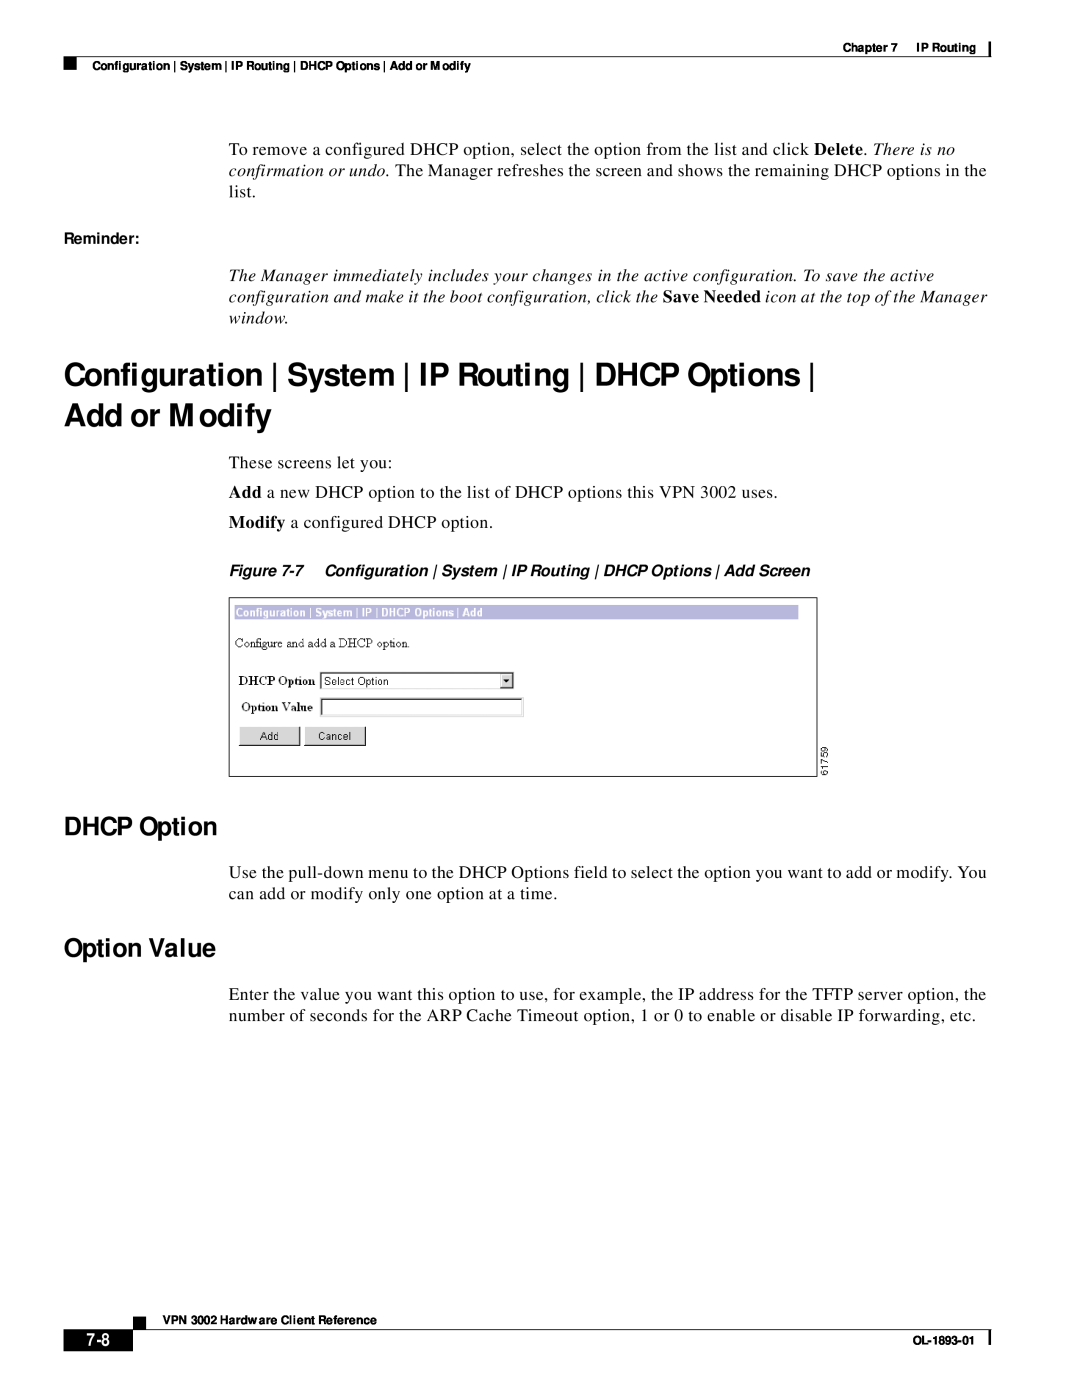 Cisco Systems VPN 3002 manual Option Value, DHCP Option, Reminder 